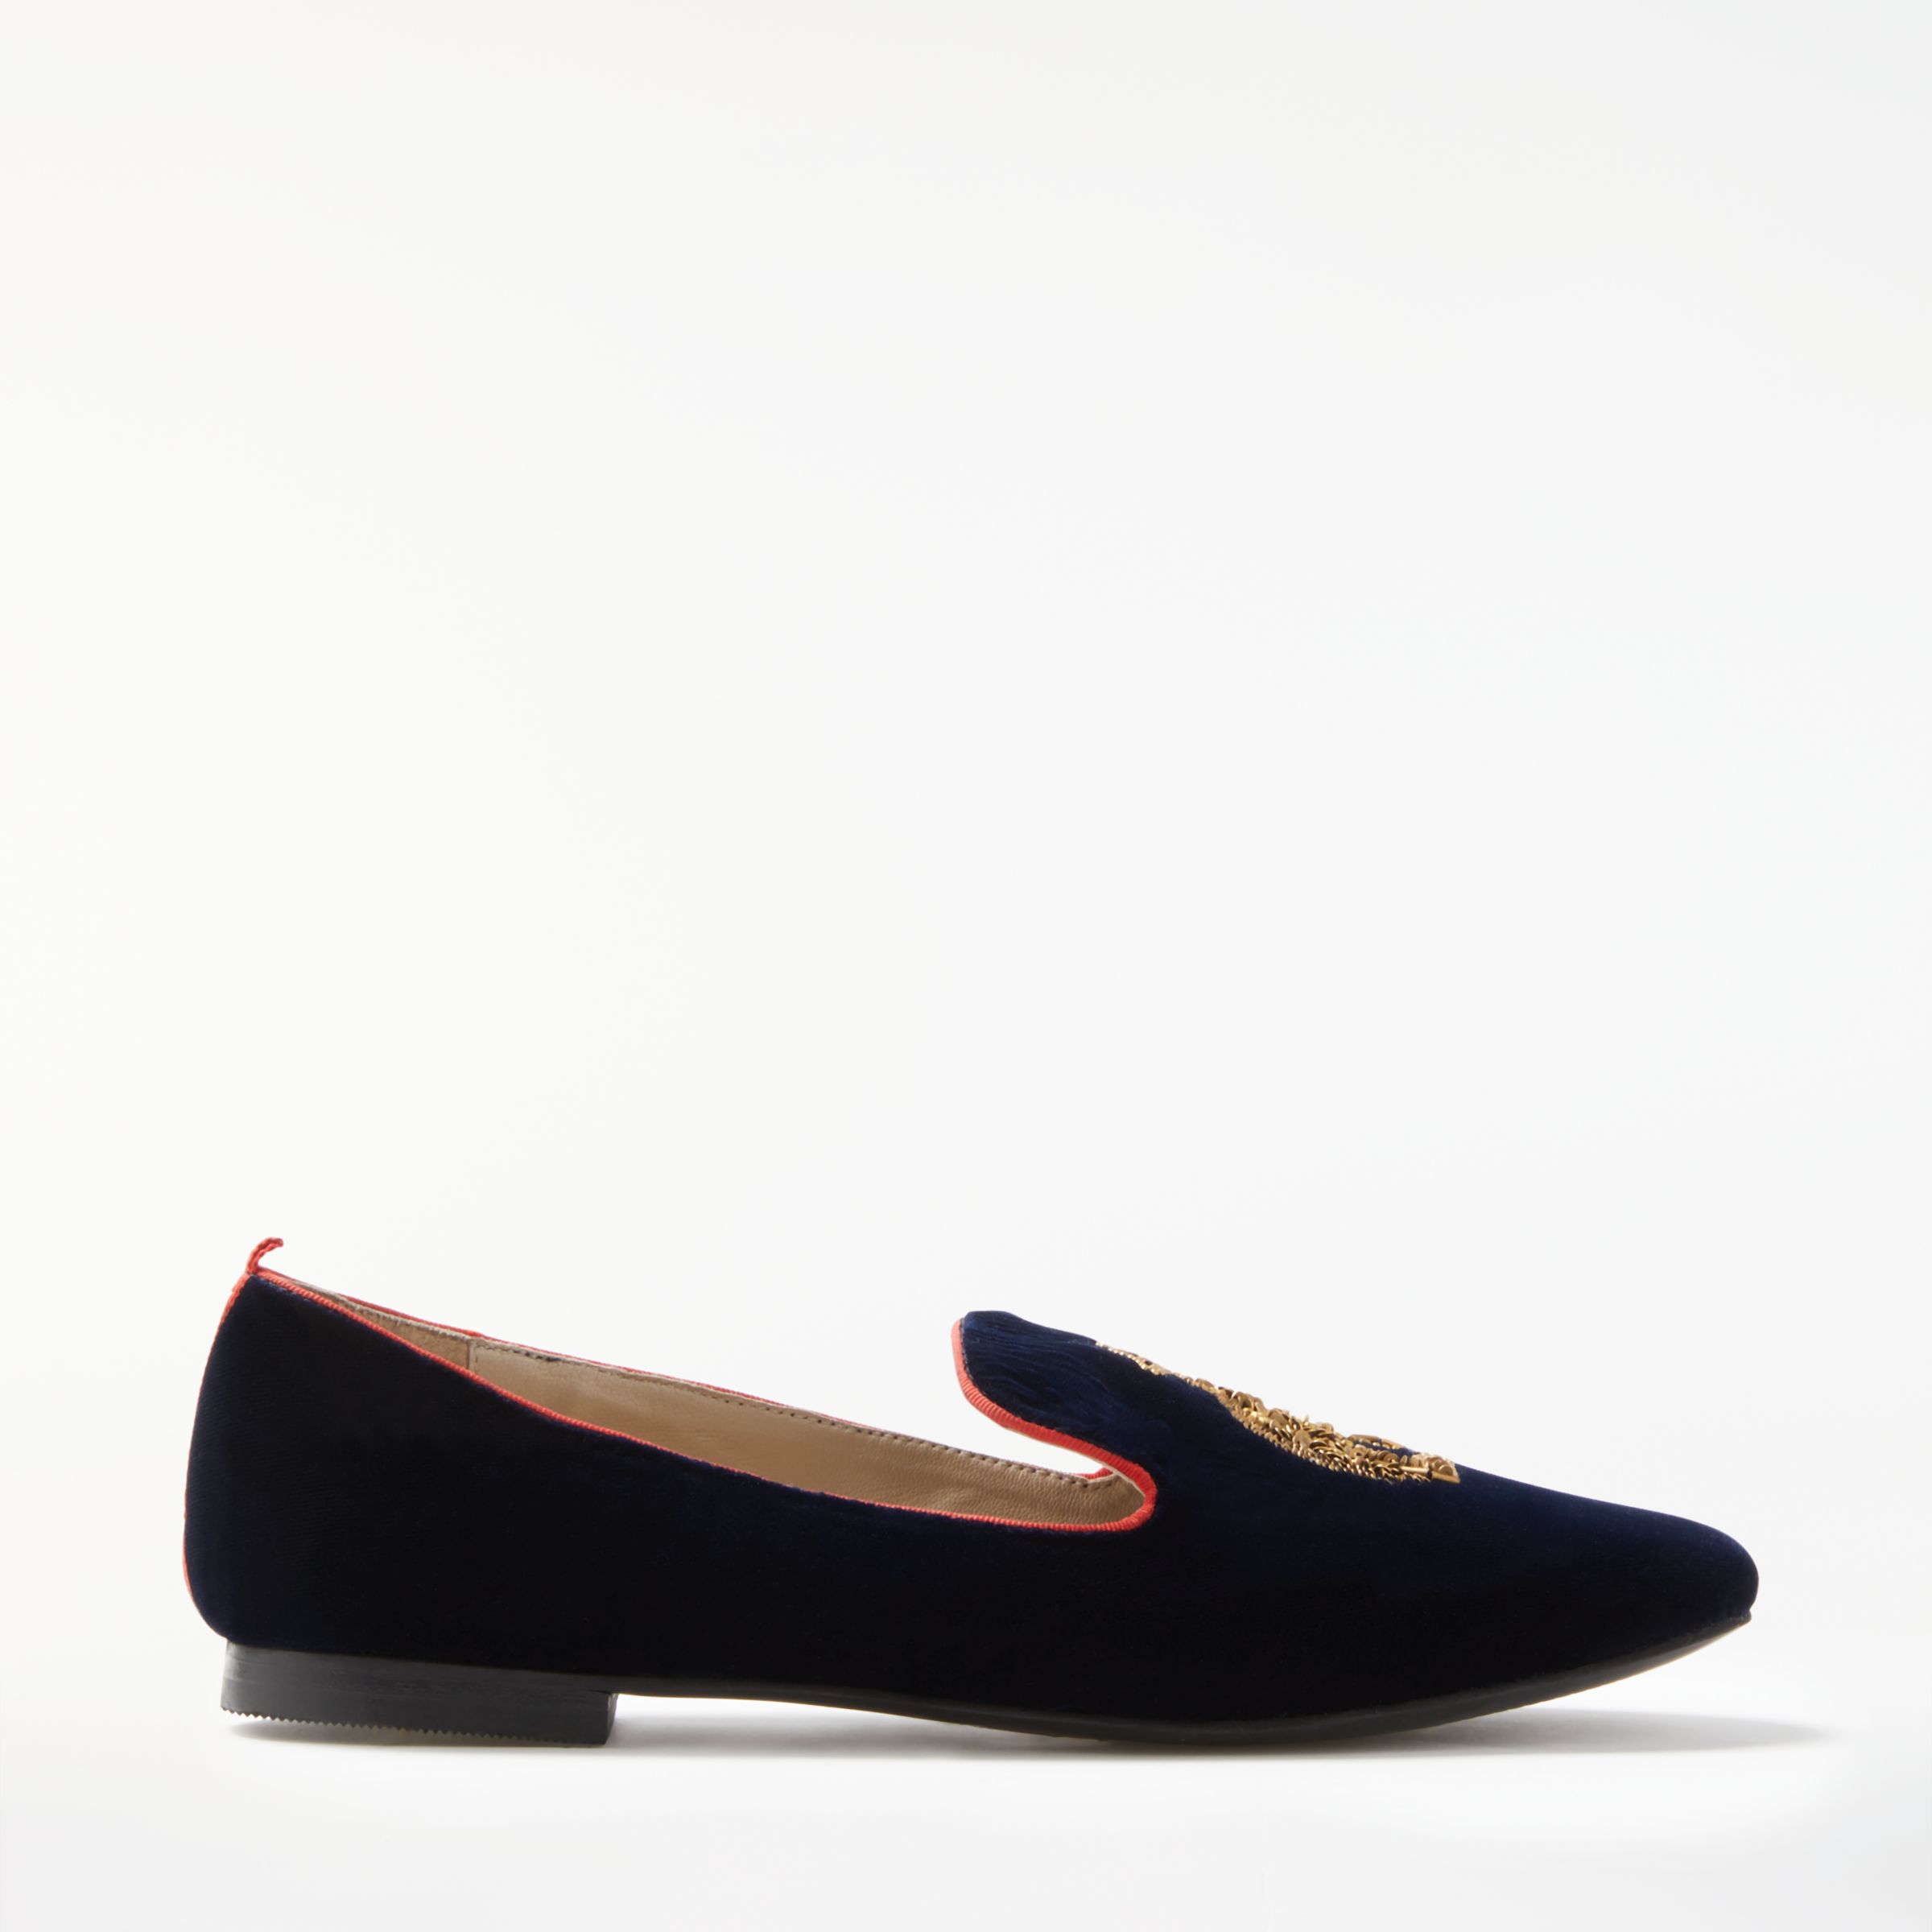 Boden Violetta Embellished Loafers, Navy, 8